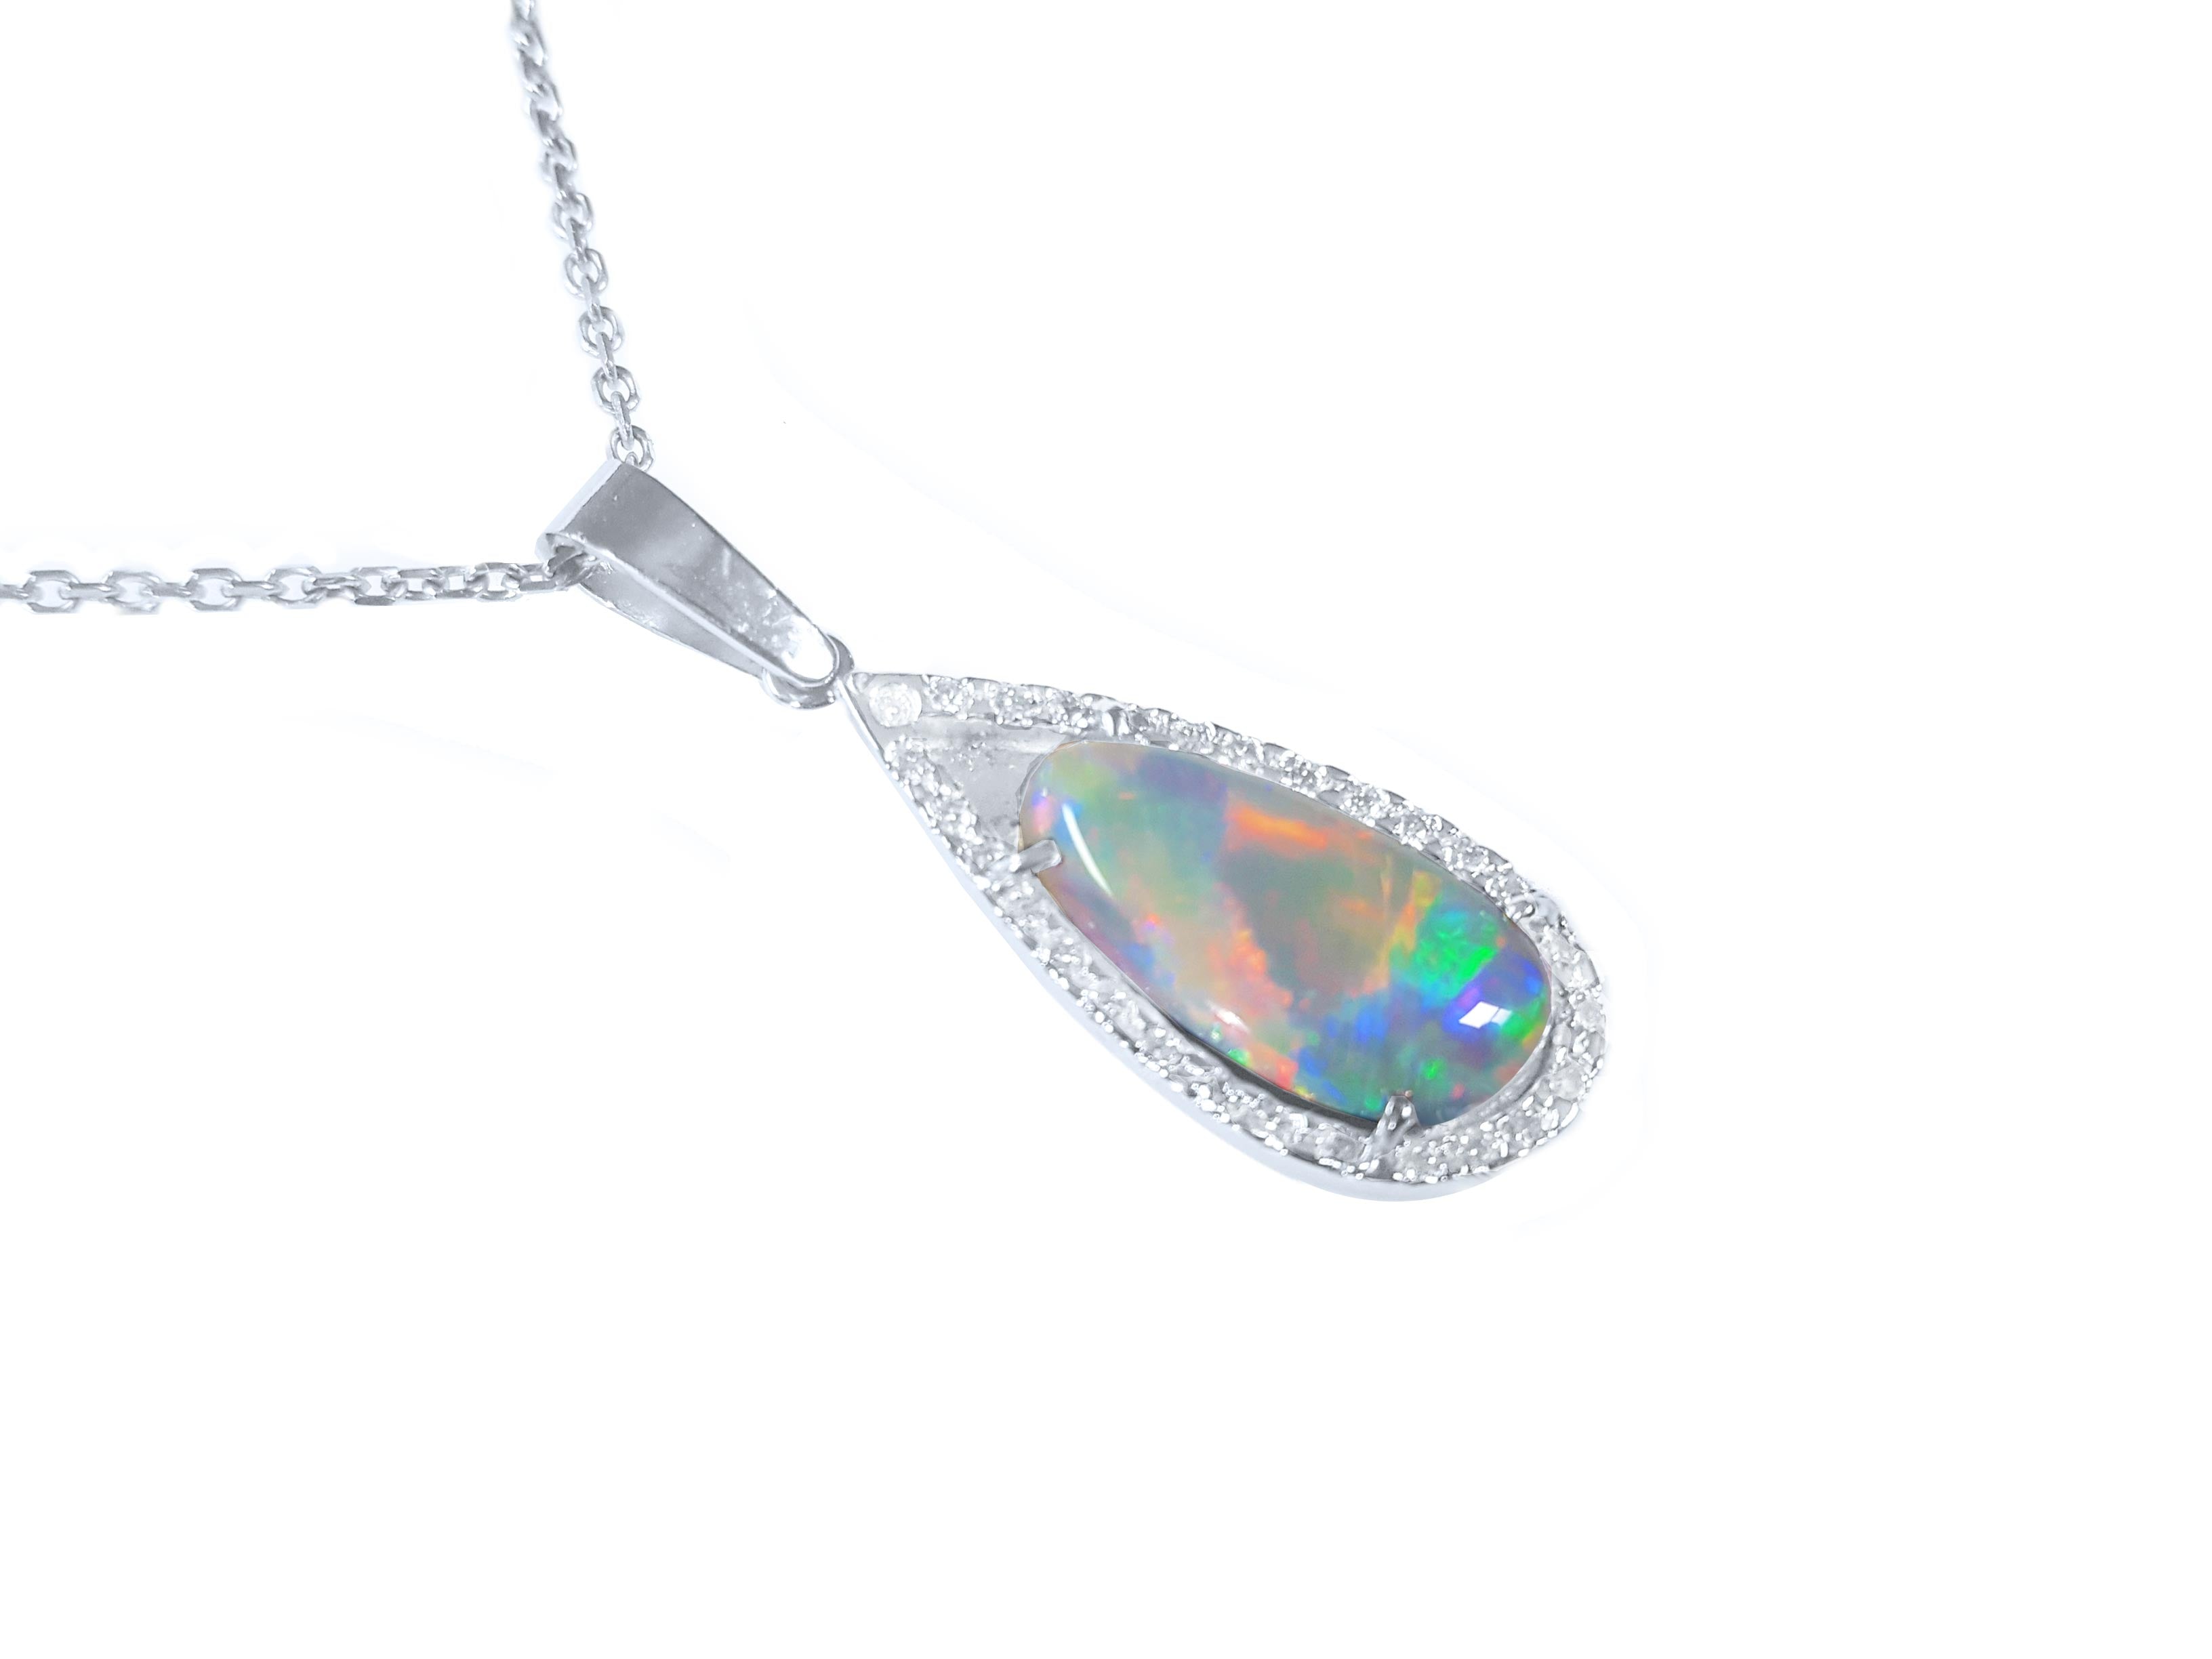 Solid Australian opal pendant